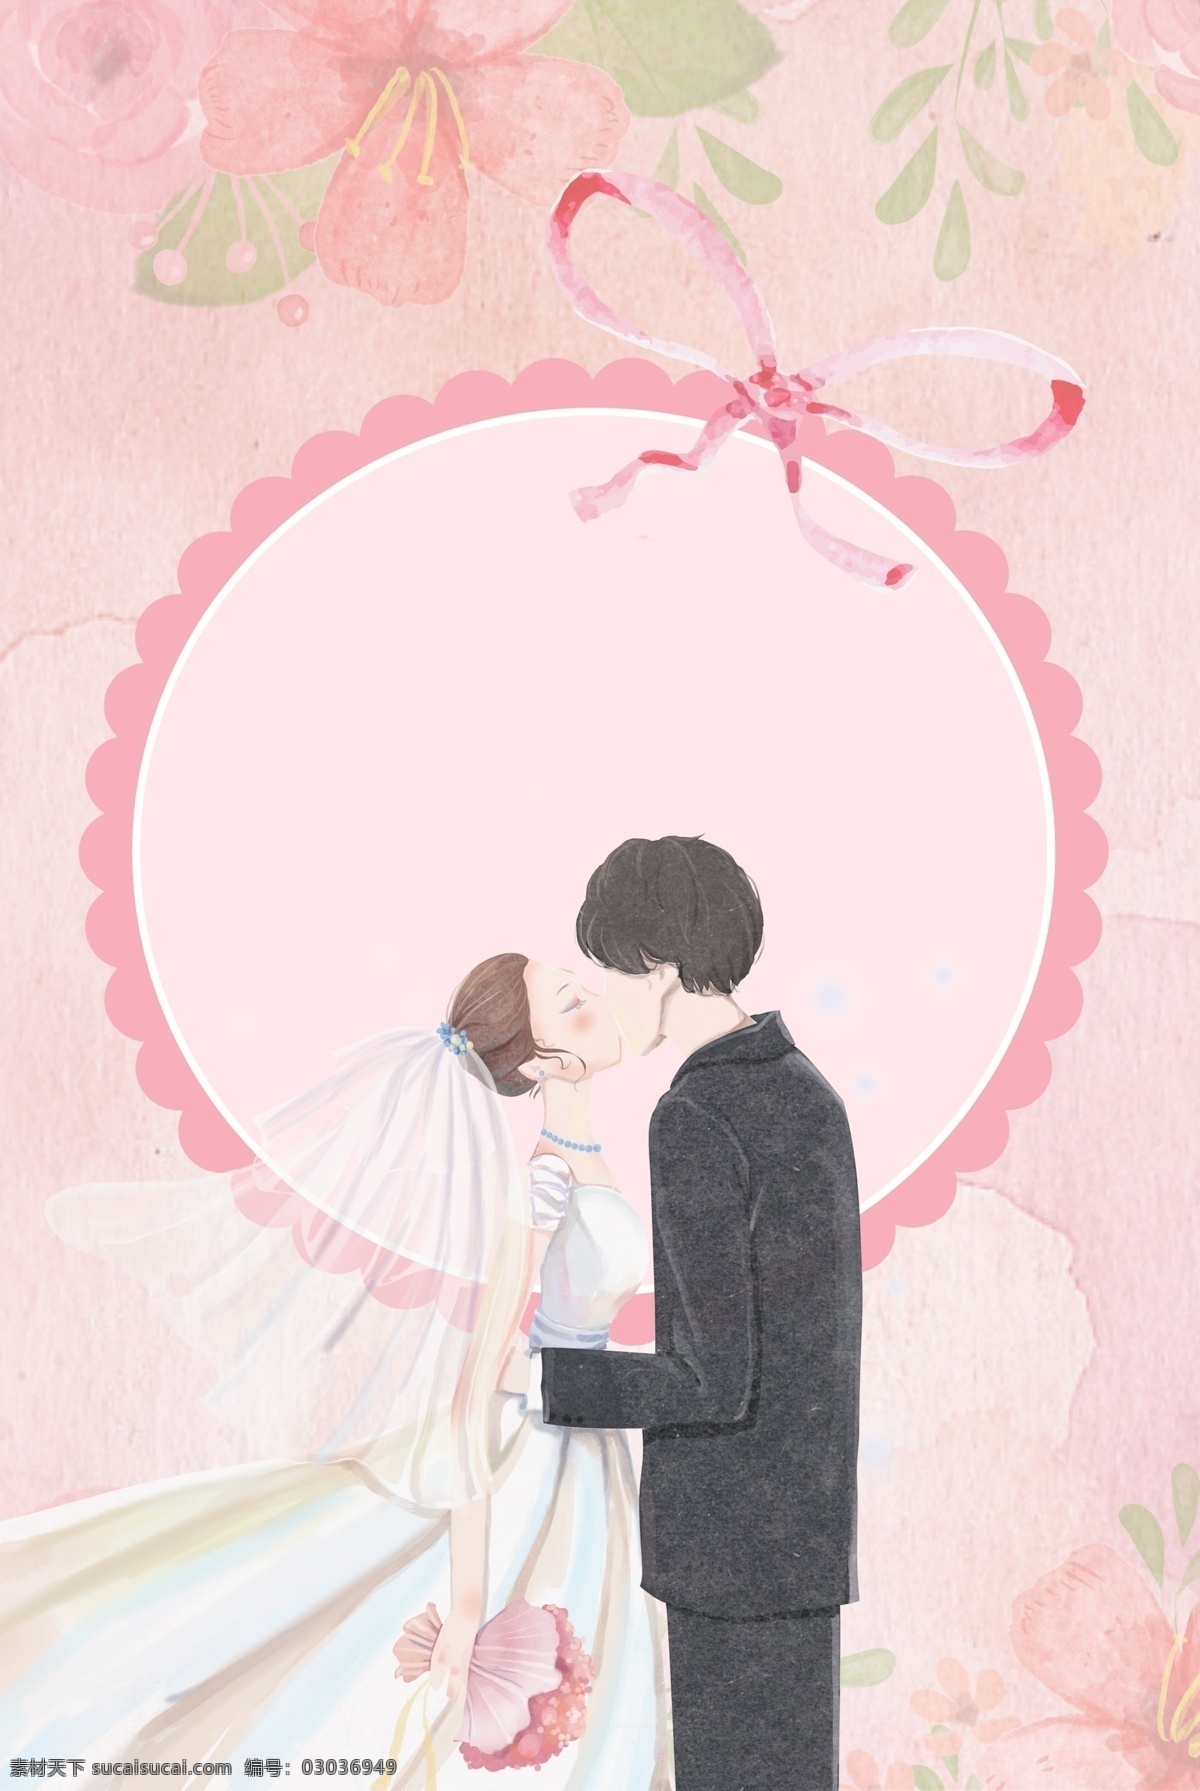 世界 接吻 日 浪漫 唯美 情人节 婚礼 背景 世界接吻日 520 粉色背景